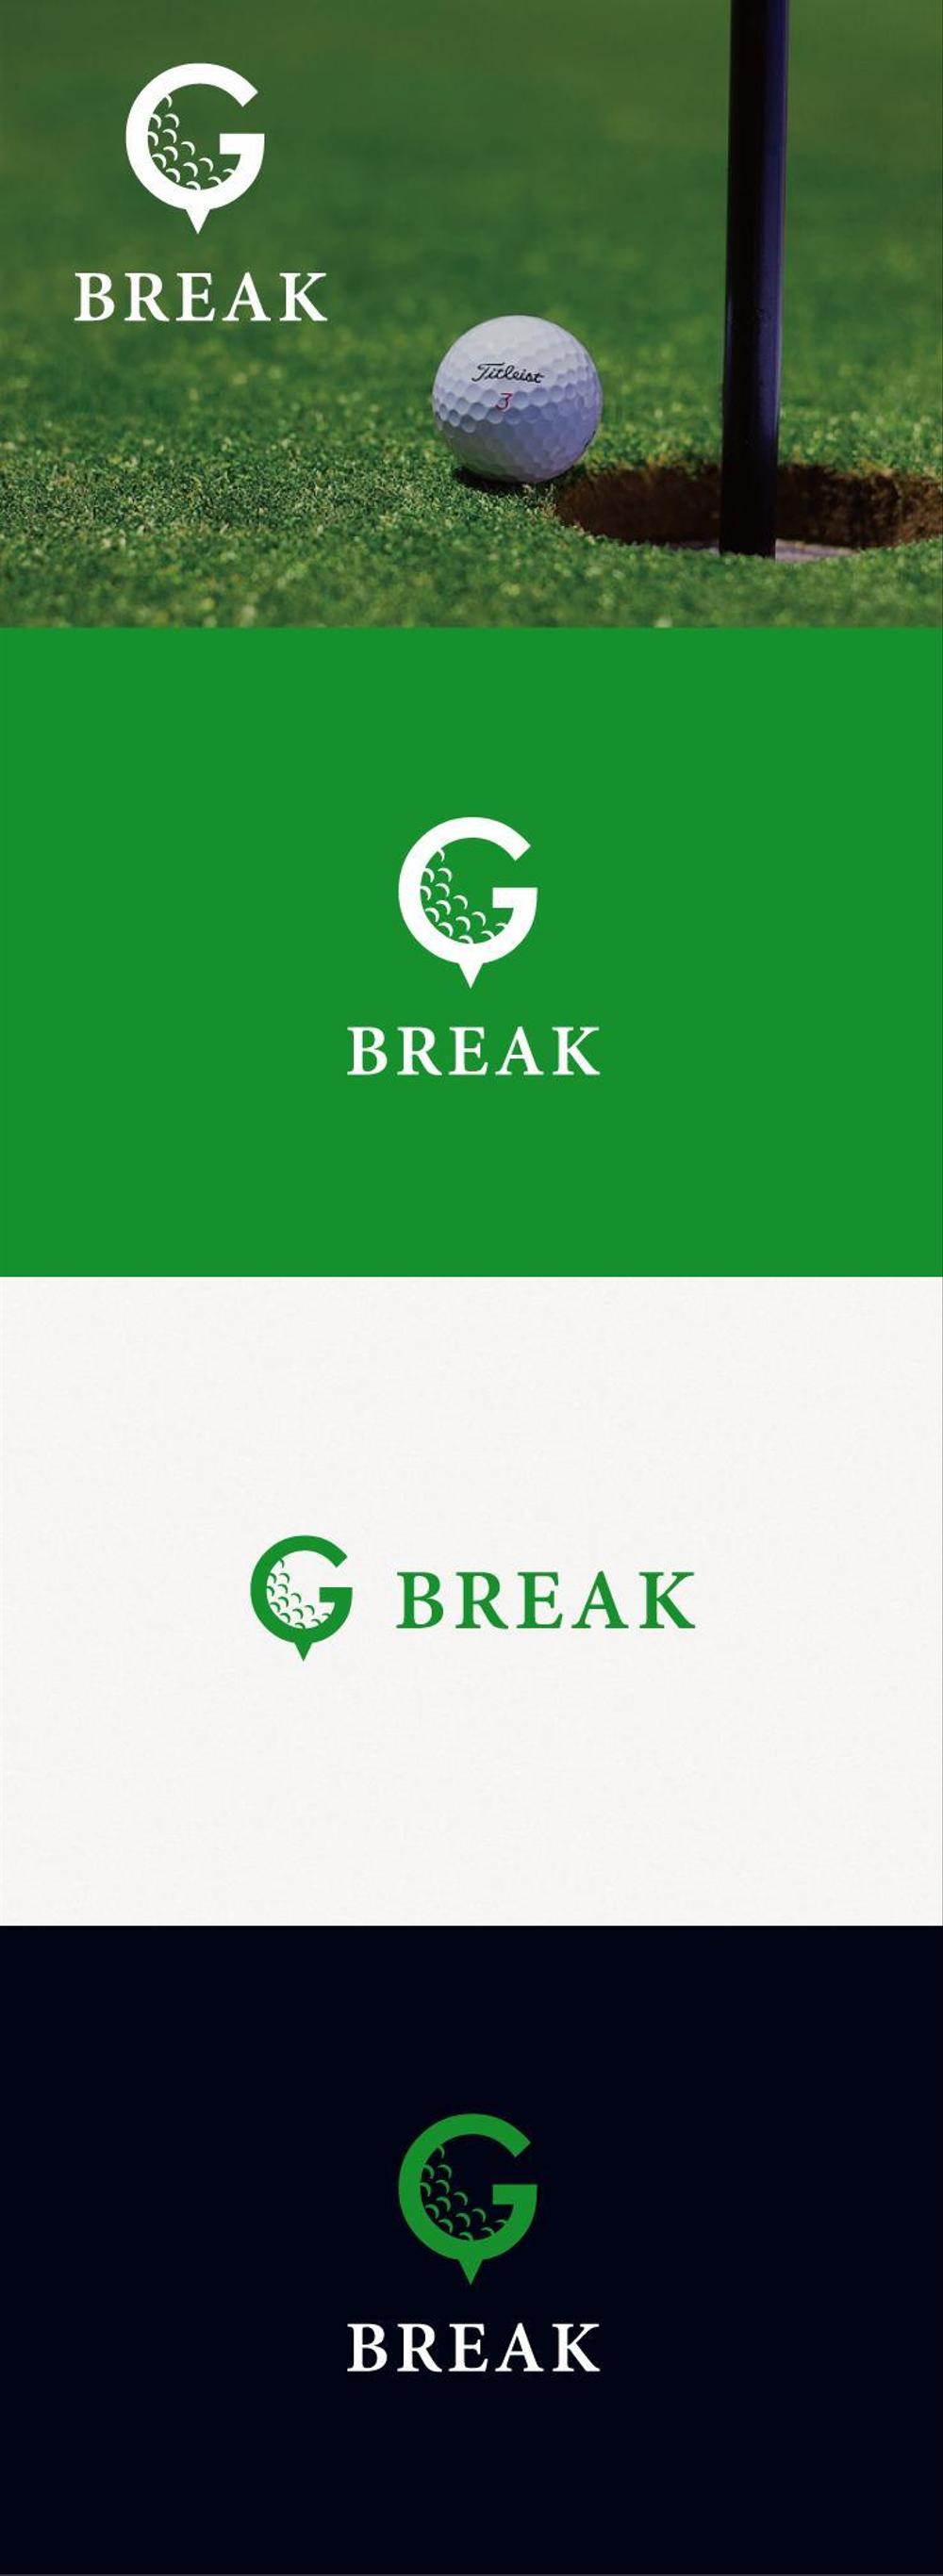 ゴルフサークル「BREAK」のロゴ